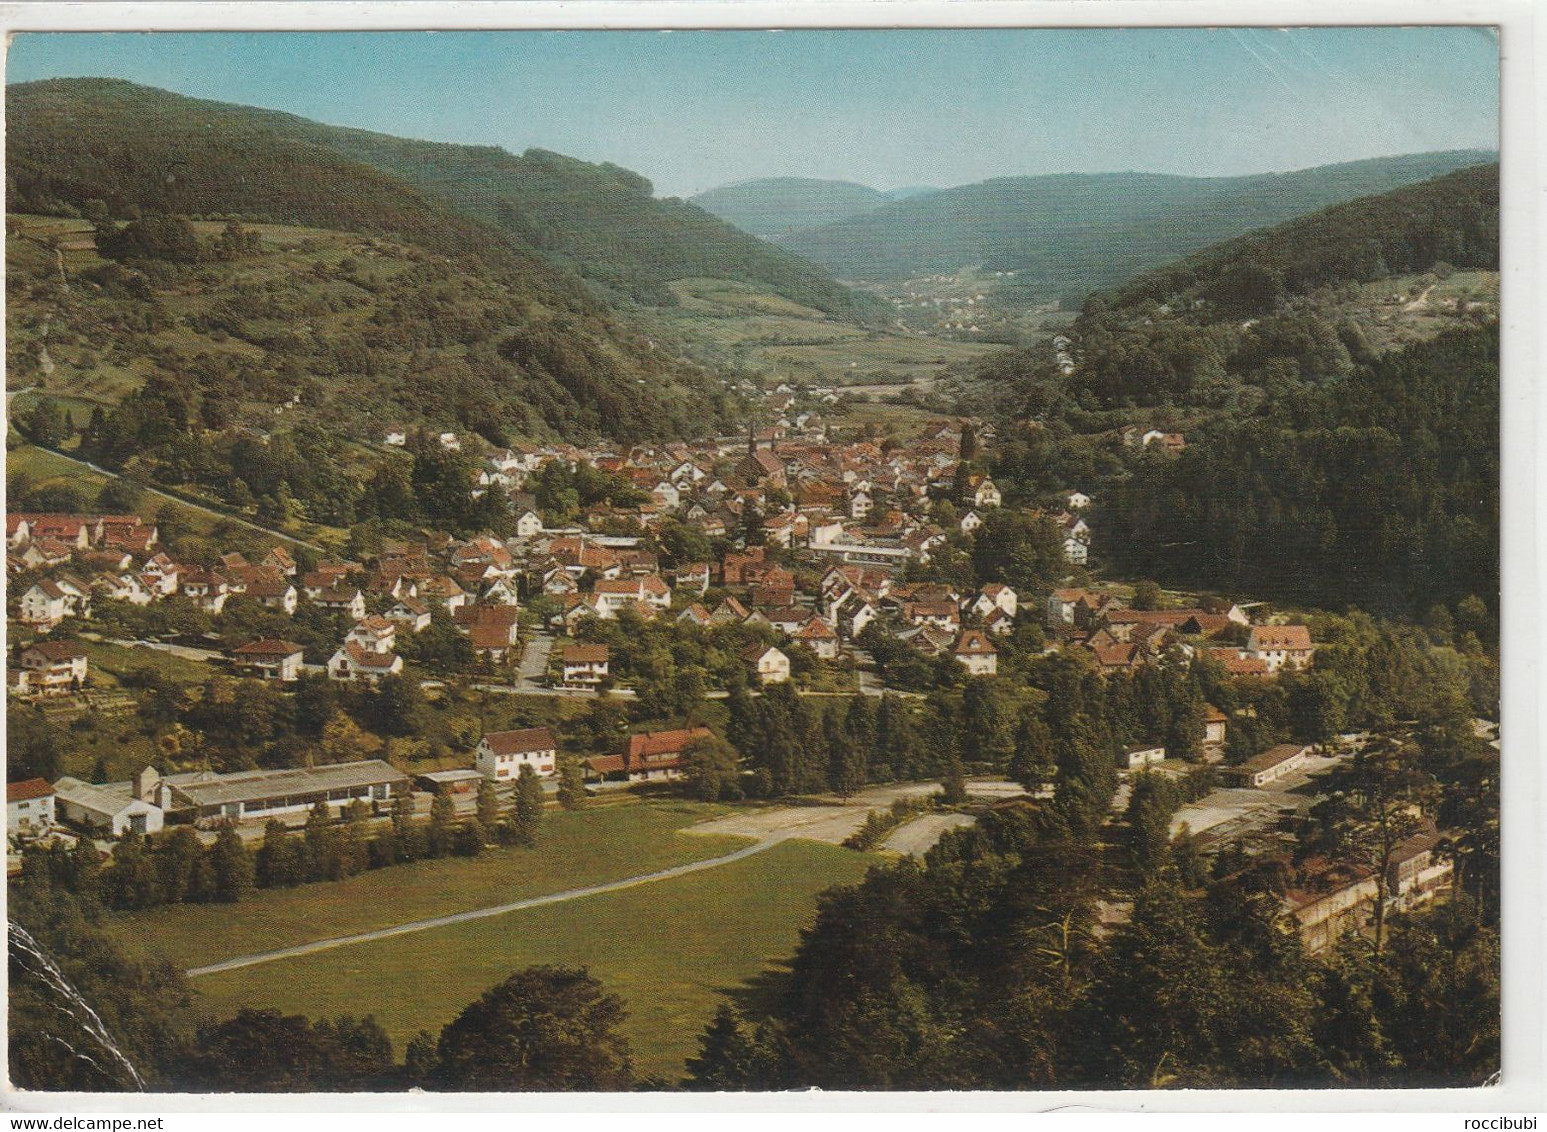 Schönau, Odenwald Bei Heidelberg, Baden-Württemberg - Heidelberg